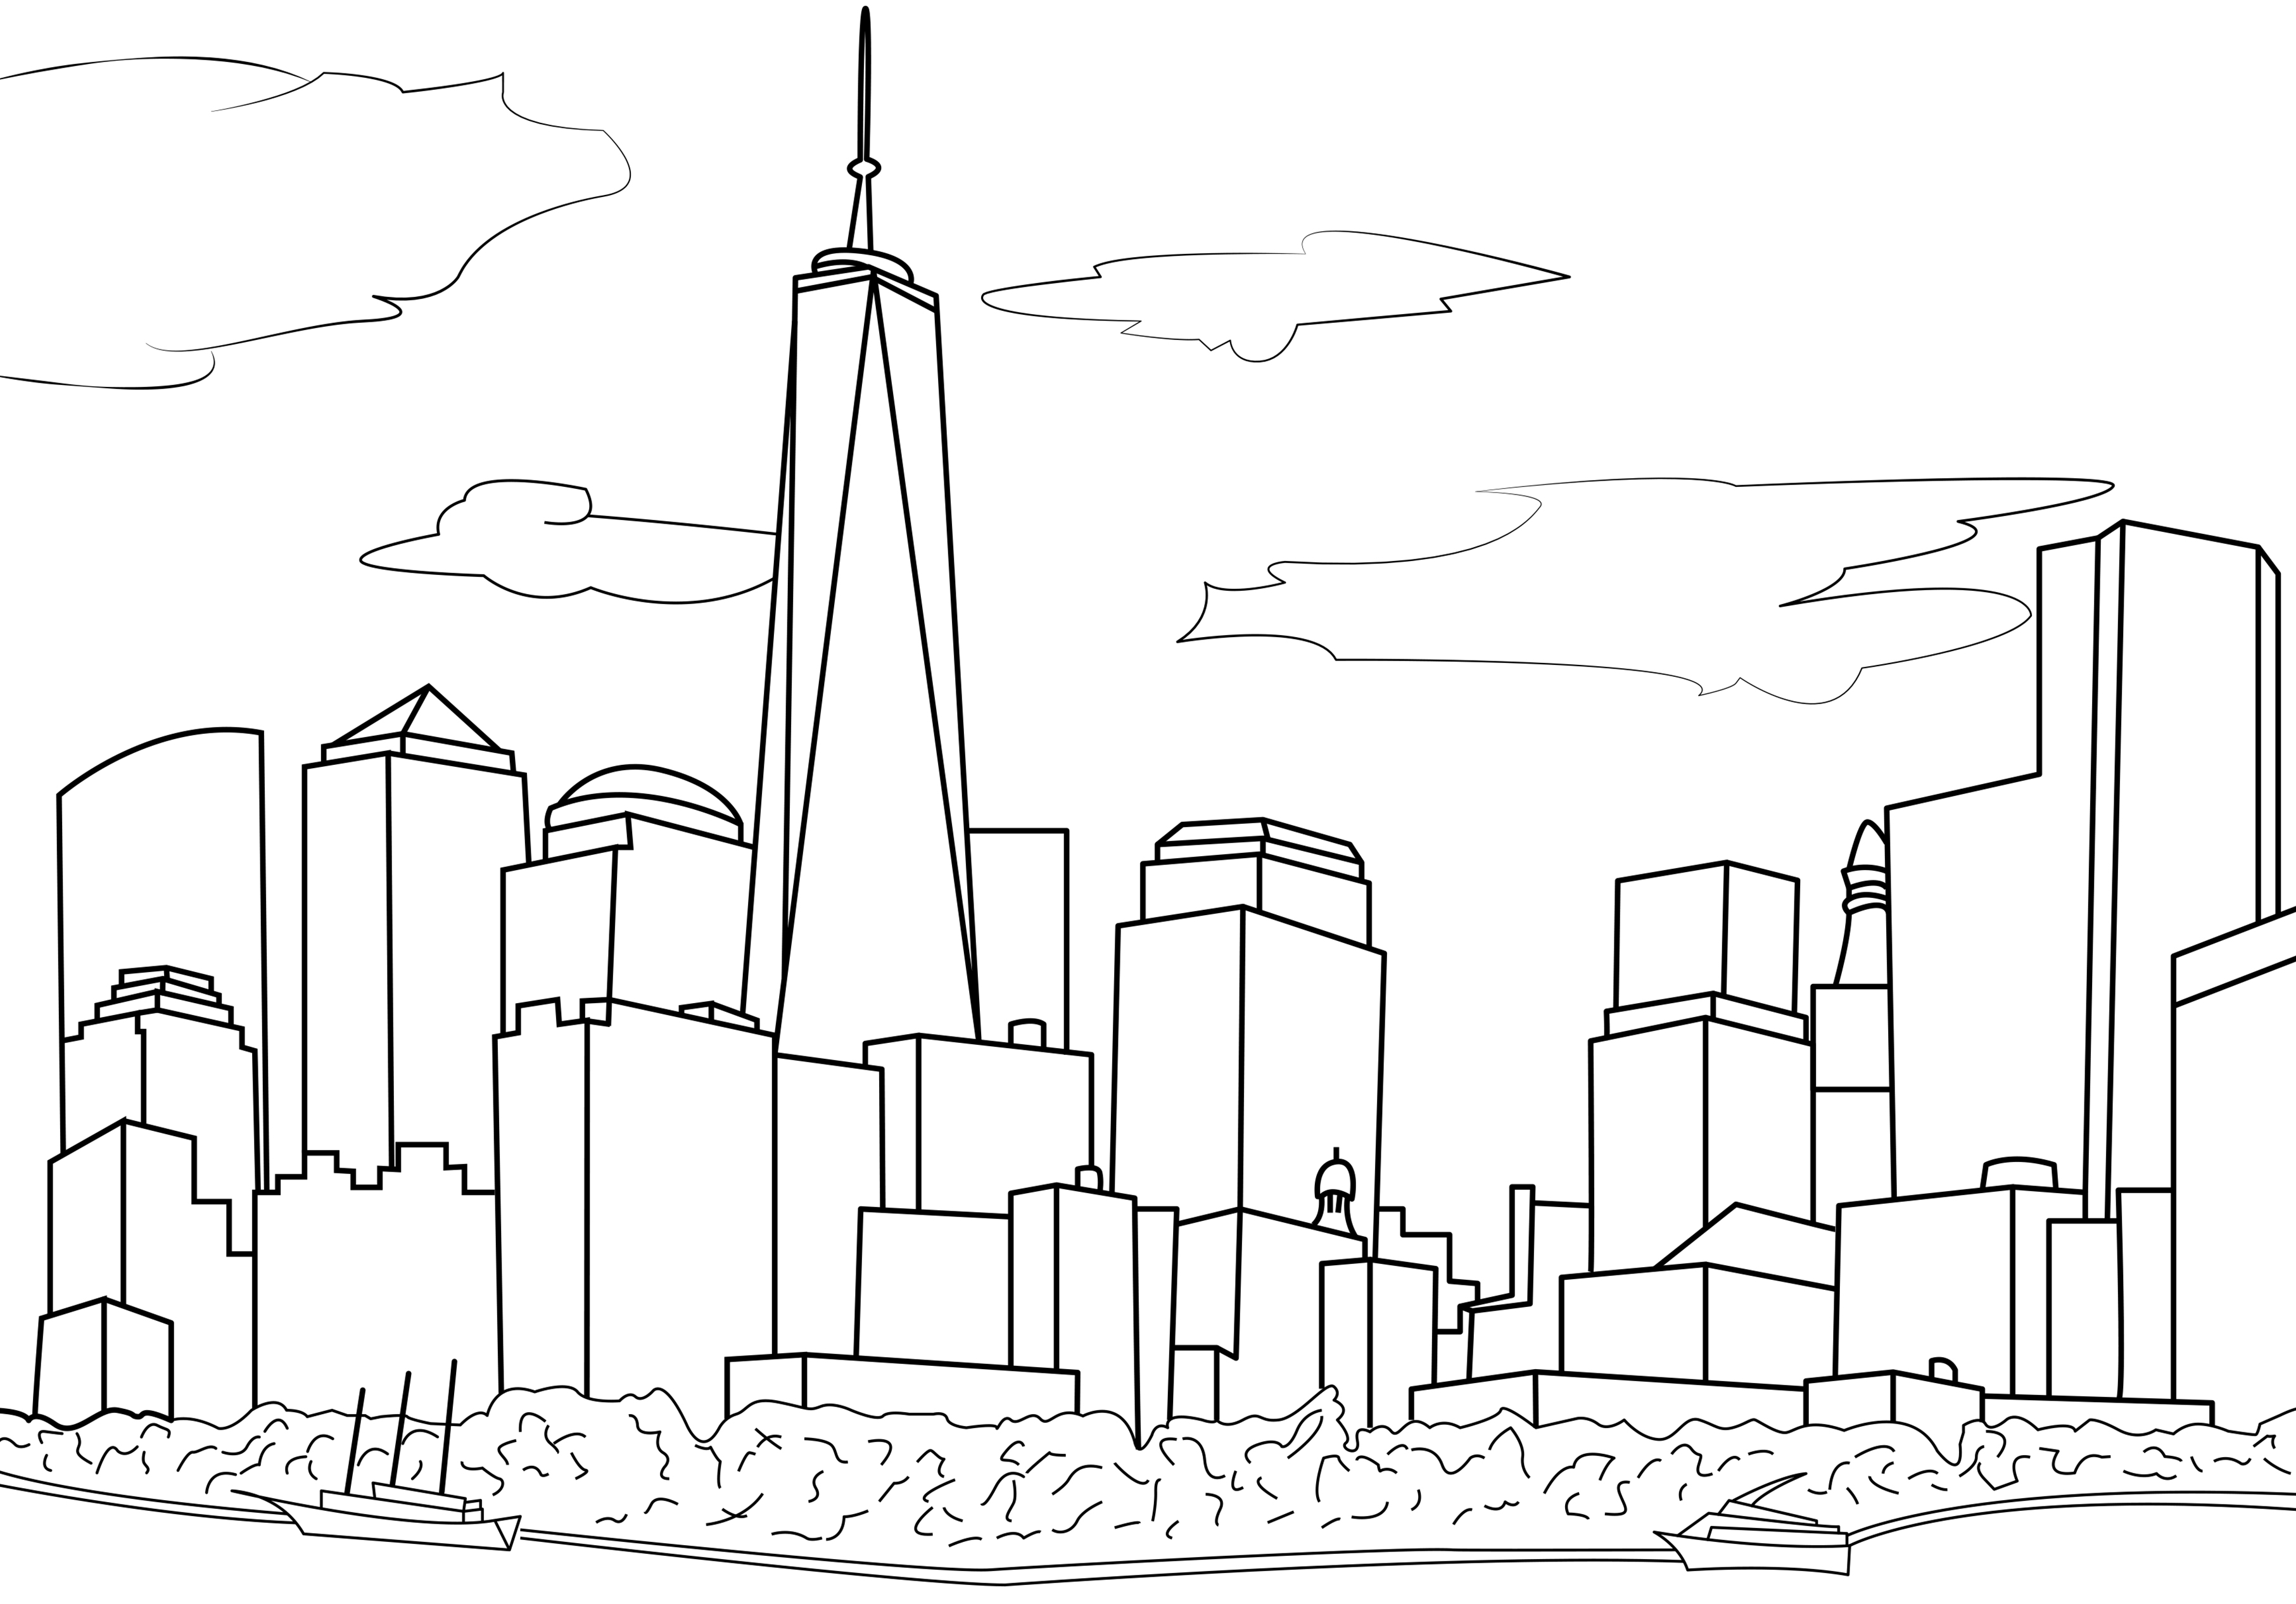 Desenho simples representando a linha do horizonte de Nova Iorque. A linha do horizonte da cidade de Nova Iorque é icónica e reconhecível em todo o mundo. Apresenta muitos arranha-céus famosos, como o Empire State Building, o Chrysler Building e o One World Trade Center. Neste desenho, só podemos ver o One World Trade Center, os outros edifícios são fictícios.